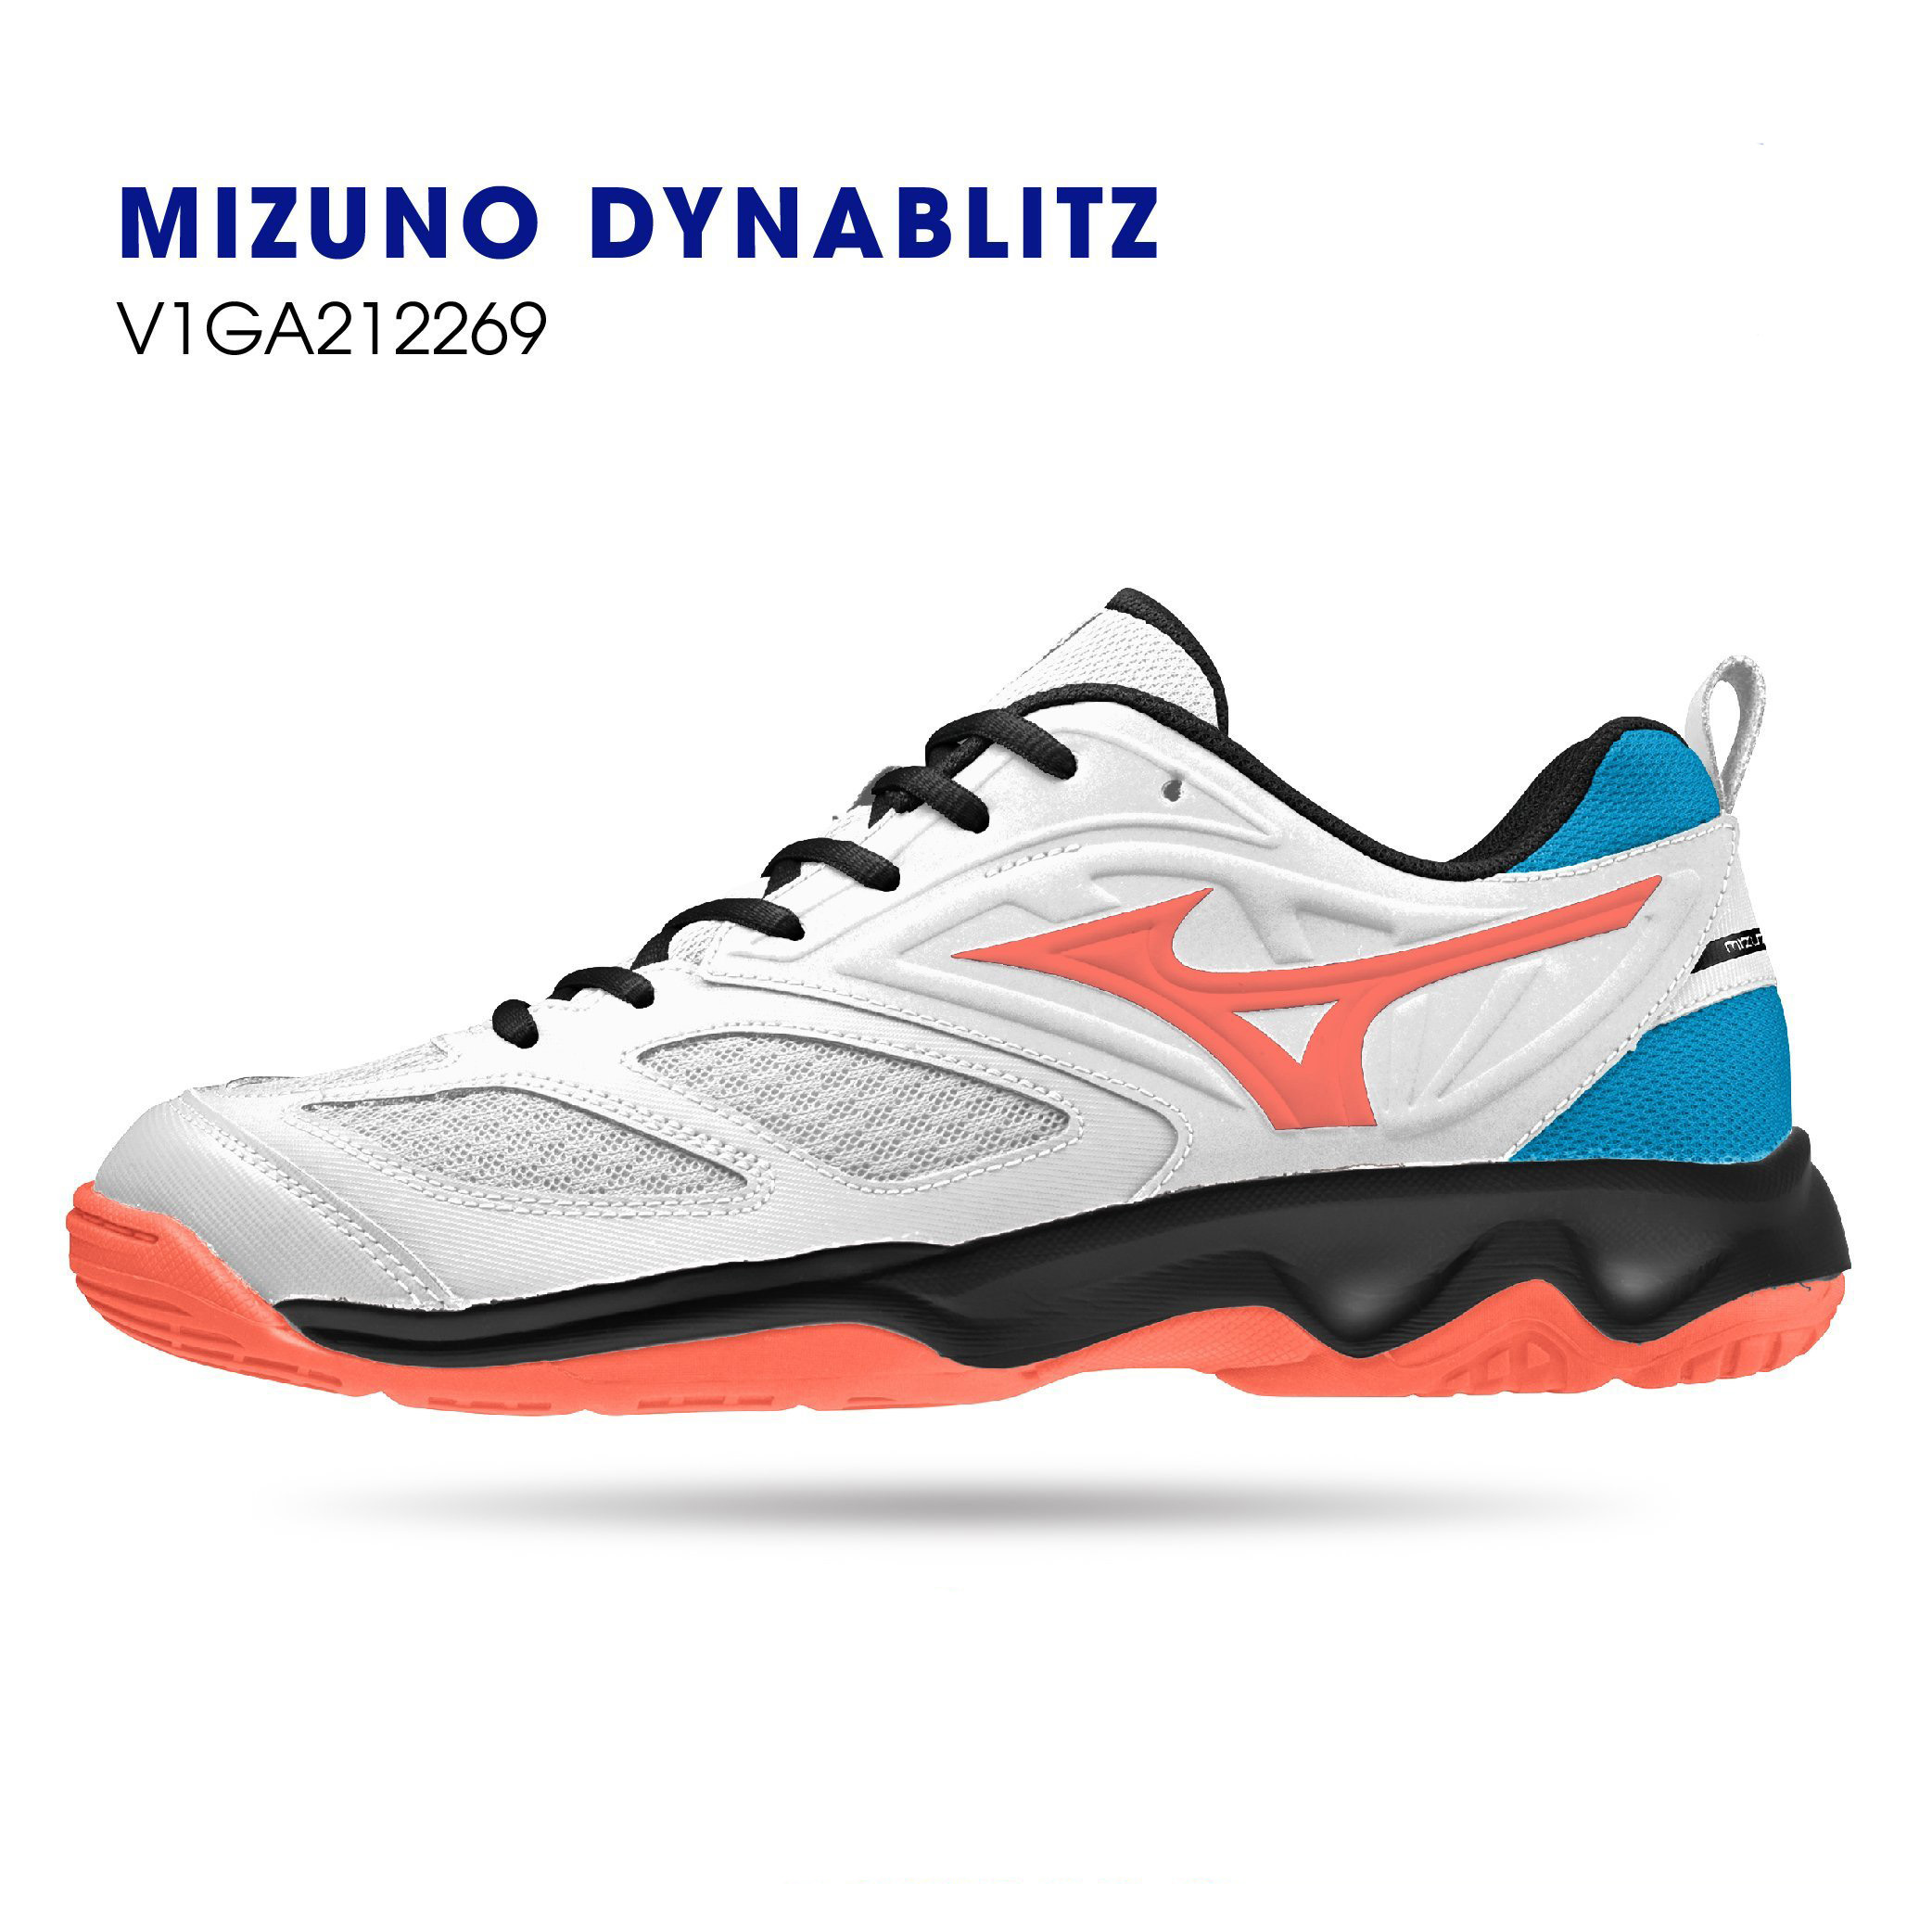 Giày cầu lông nam mizuno dynablitz mẫu mới có 3 màu lựa chọn